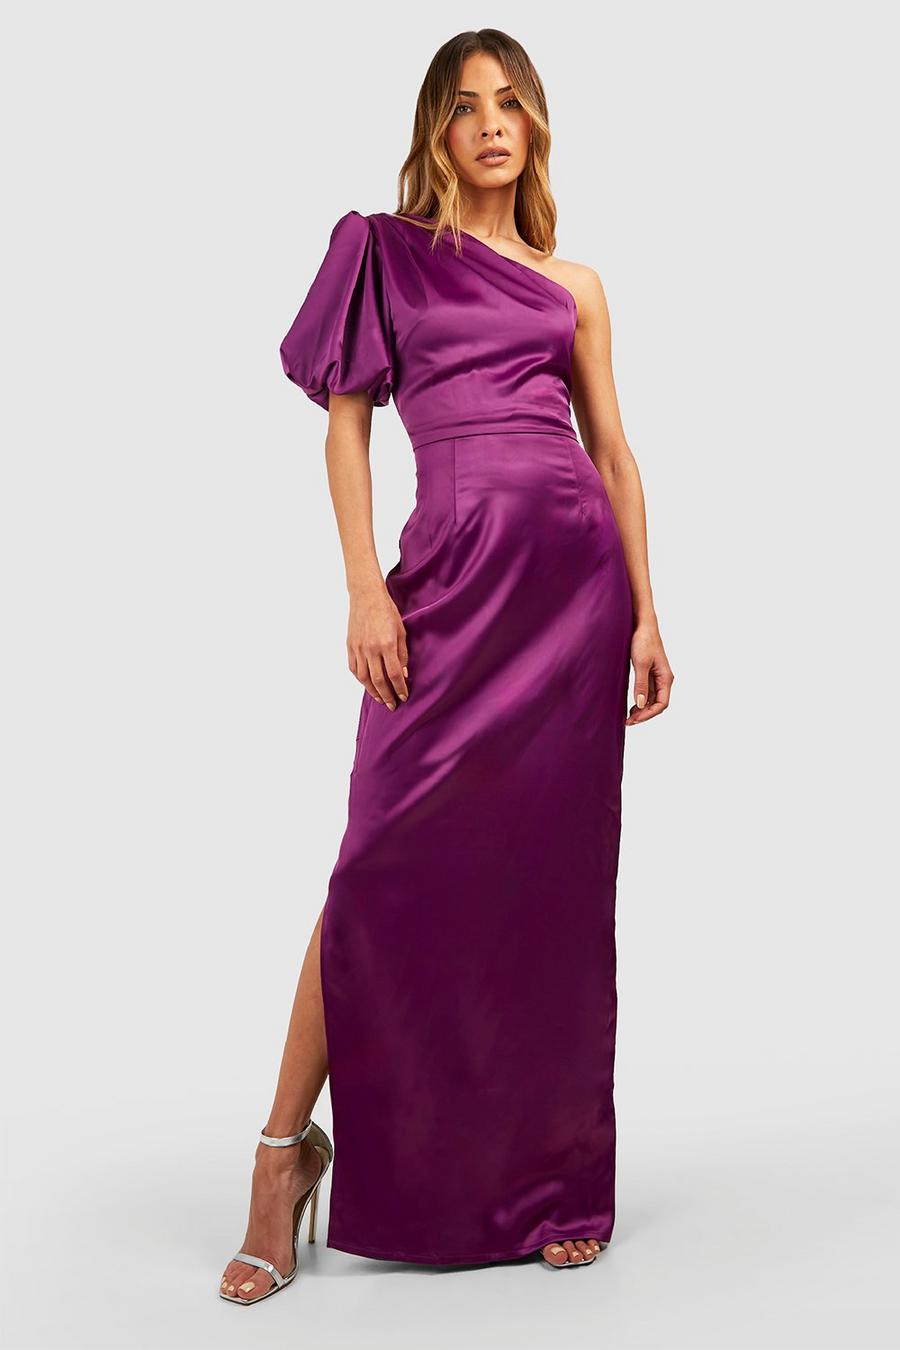 Jewel purple Satin Puff Sleeve Column Maxi Dress